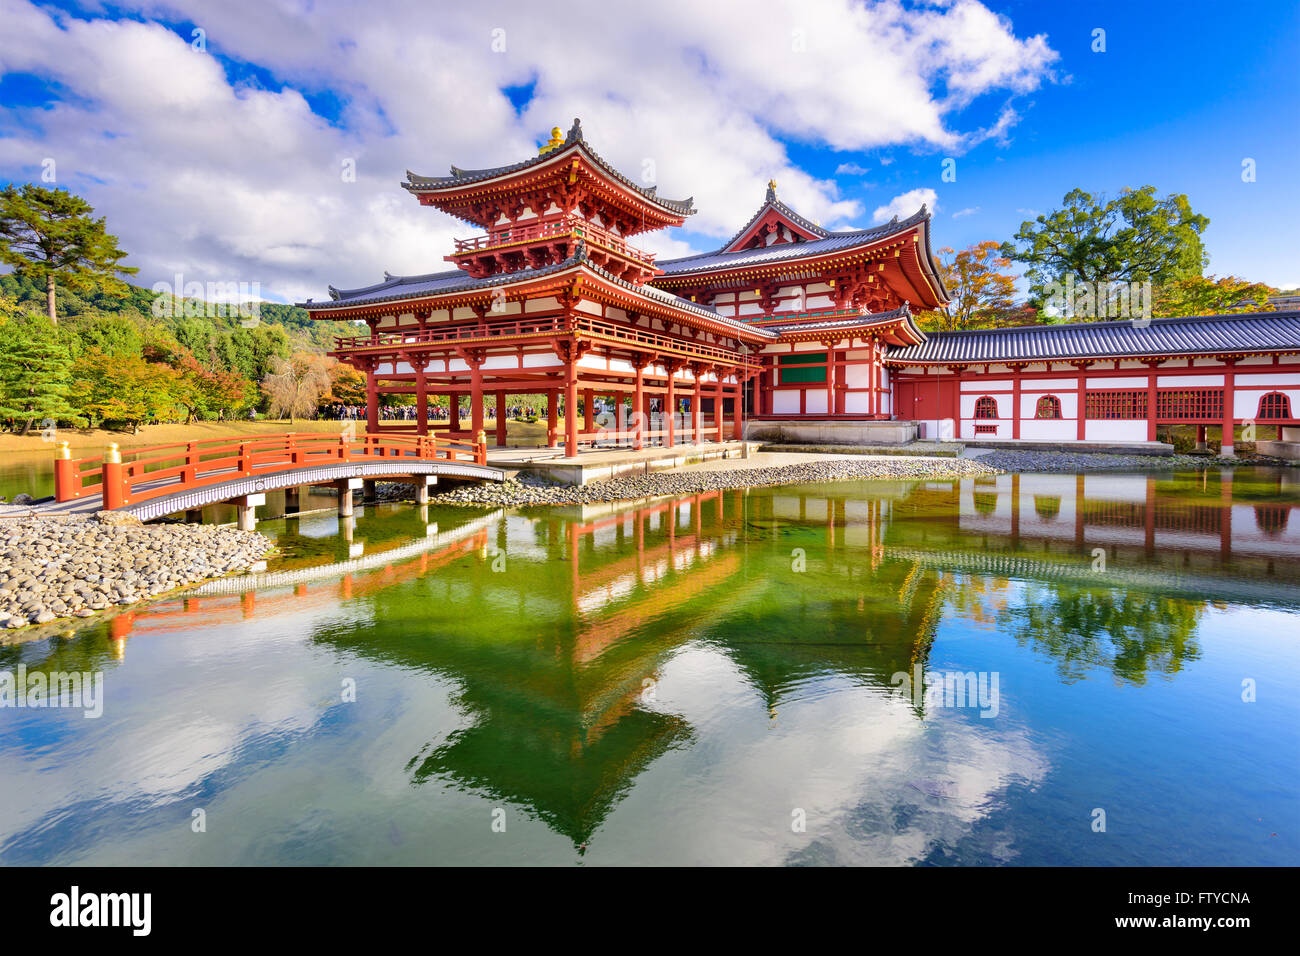 Byodoin Temple in Uji, Kyoto, Japan. Stock Photo